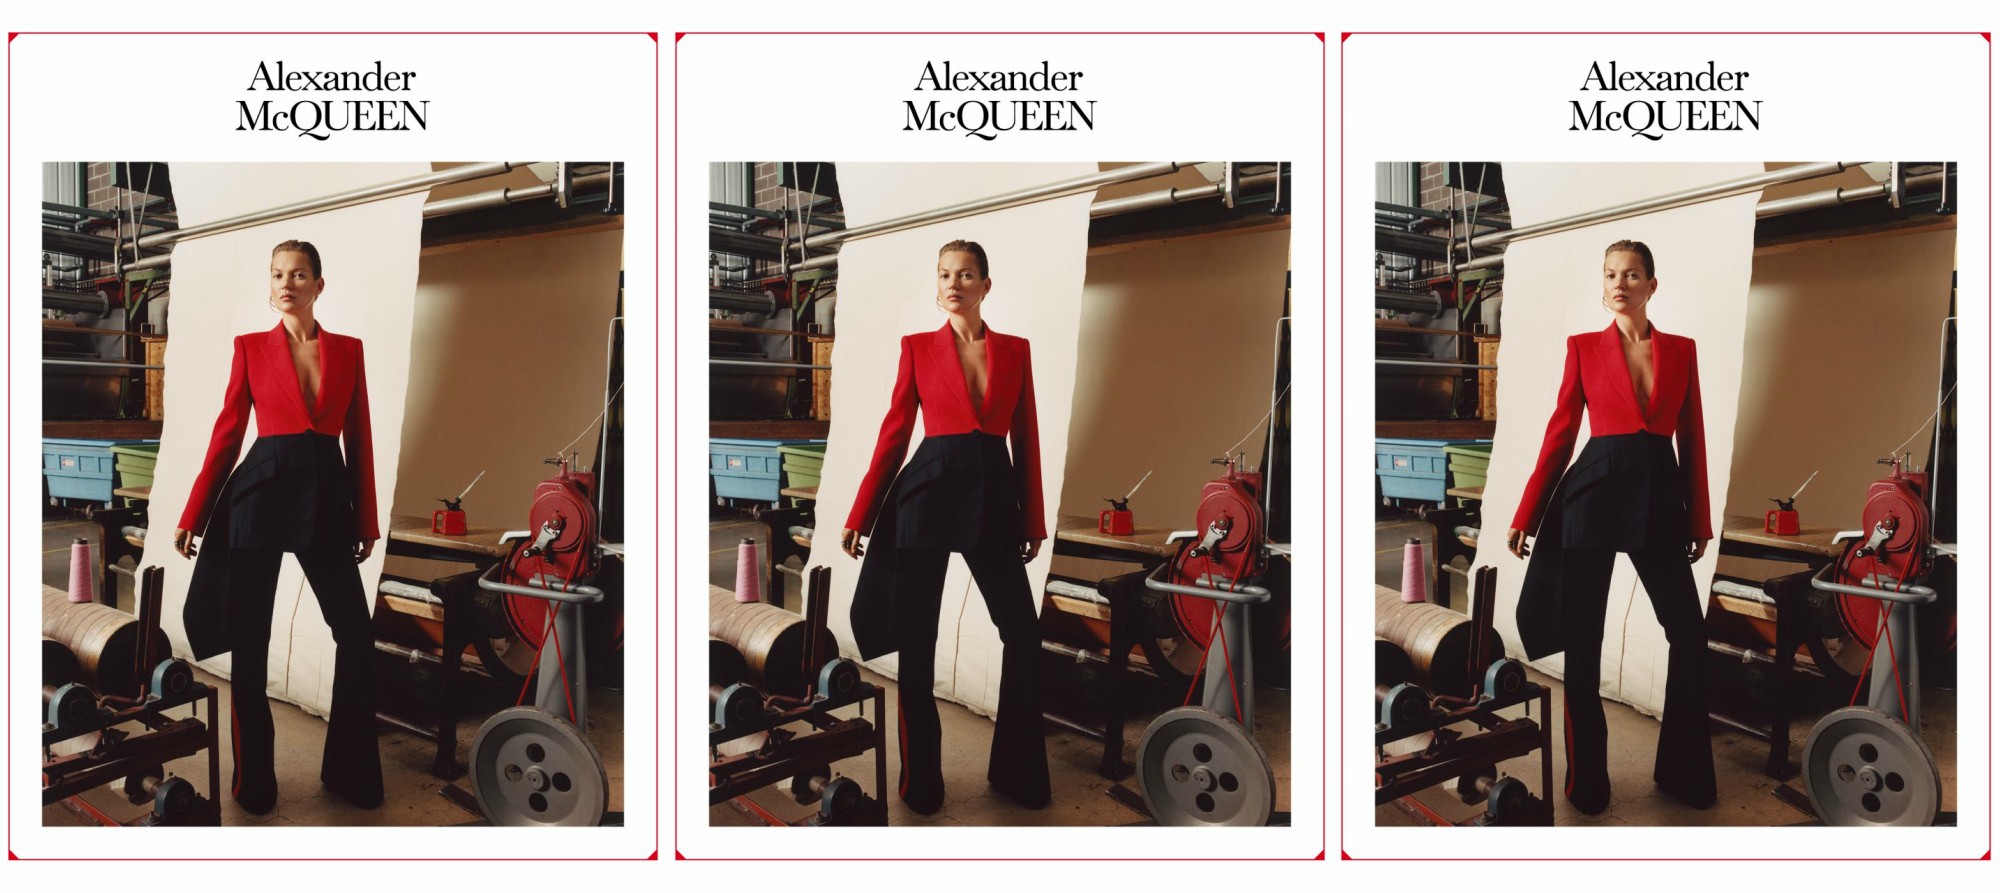 Кейт Мосс, платья-розы и сад в рекламной кампании Alexander McQueen